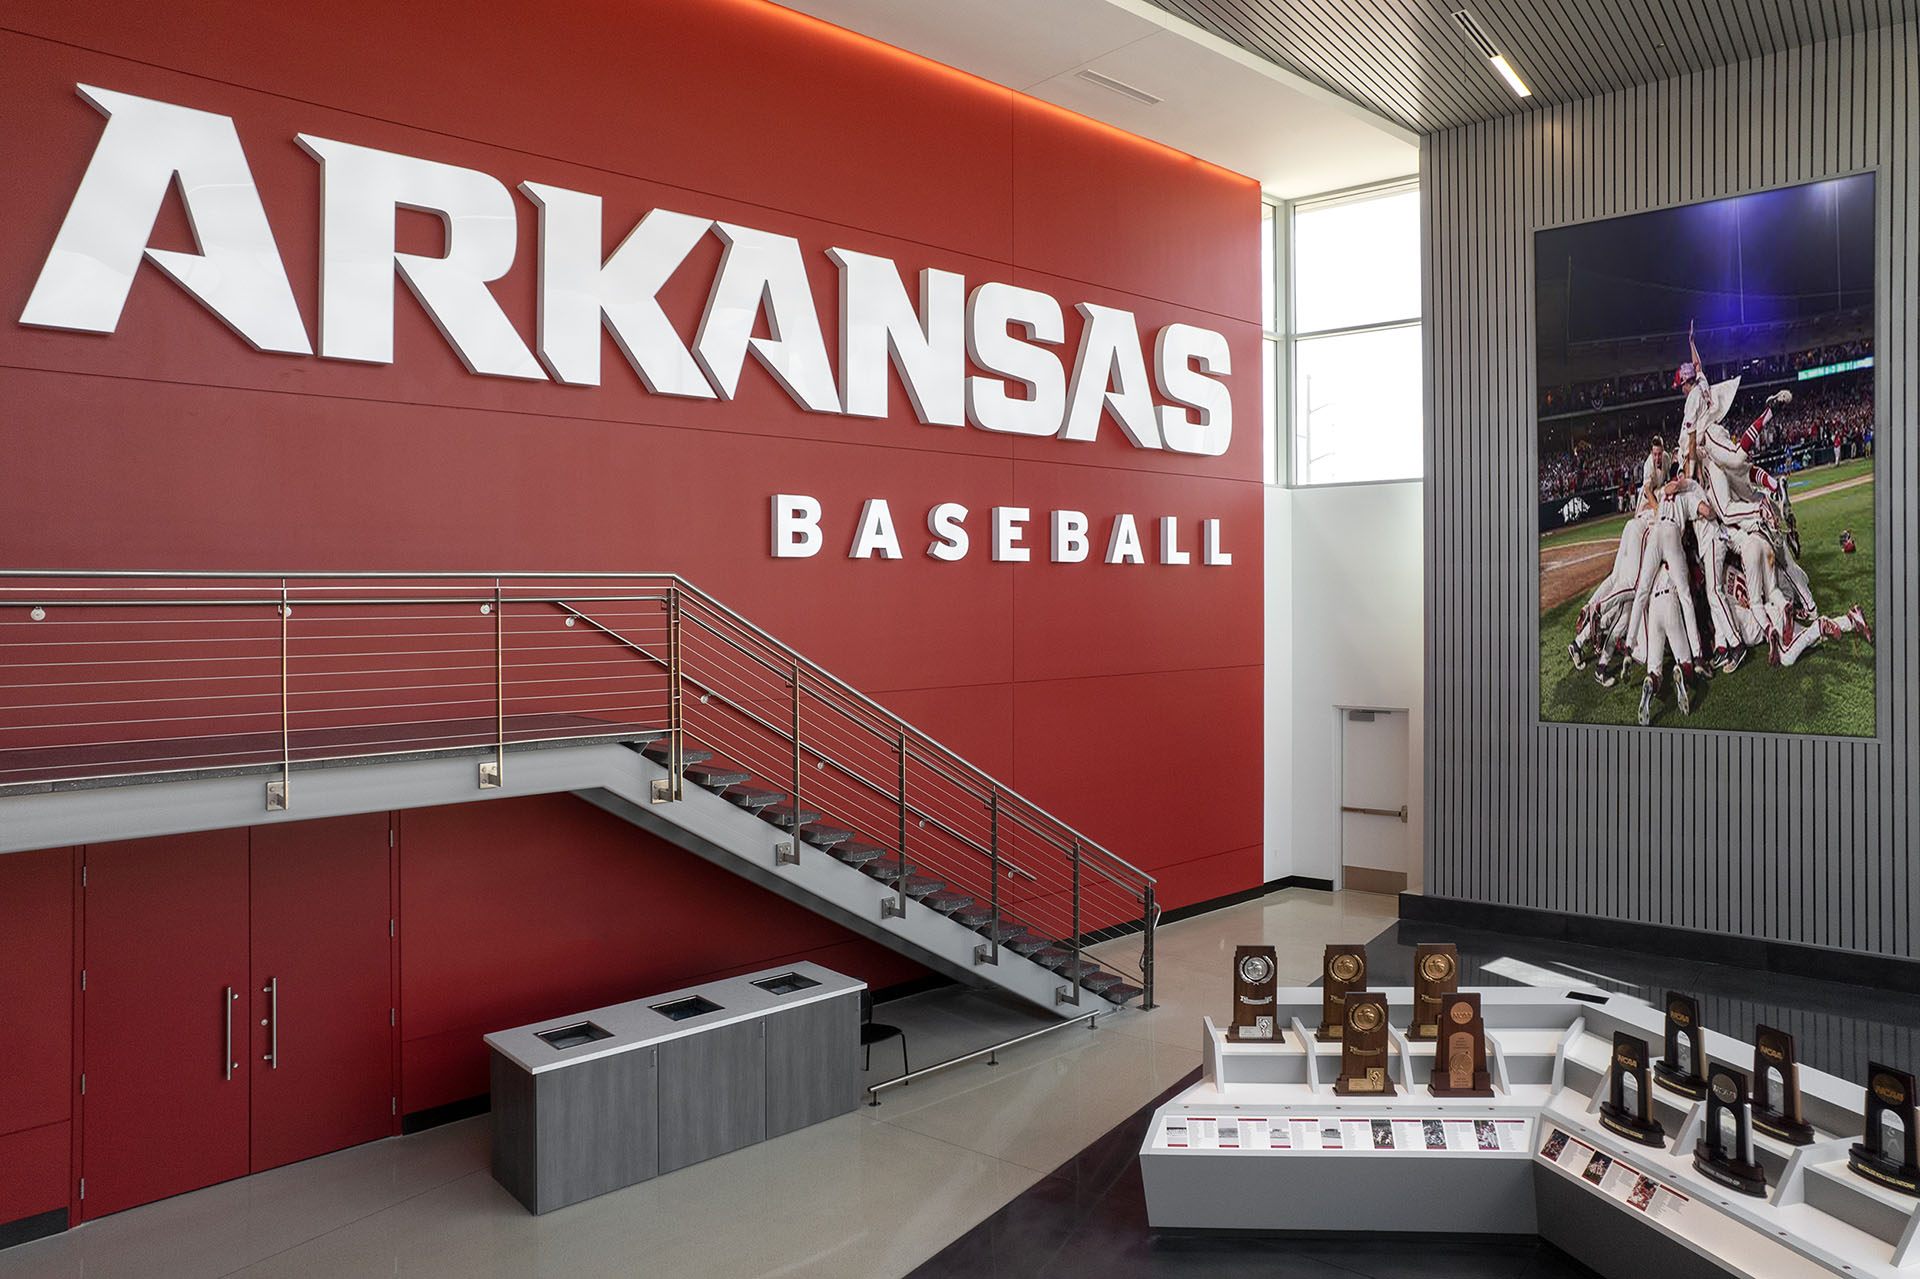 University of Arkansas Baseball Development Center